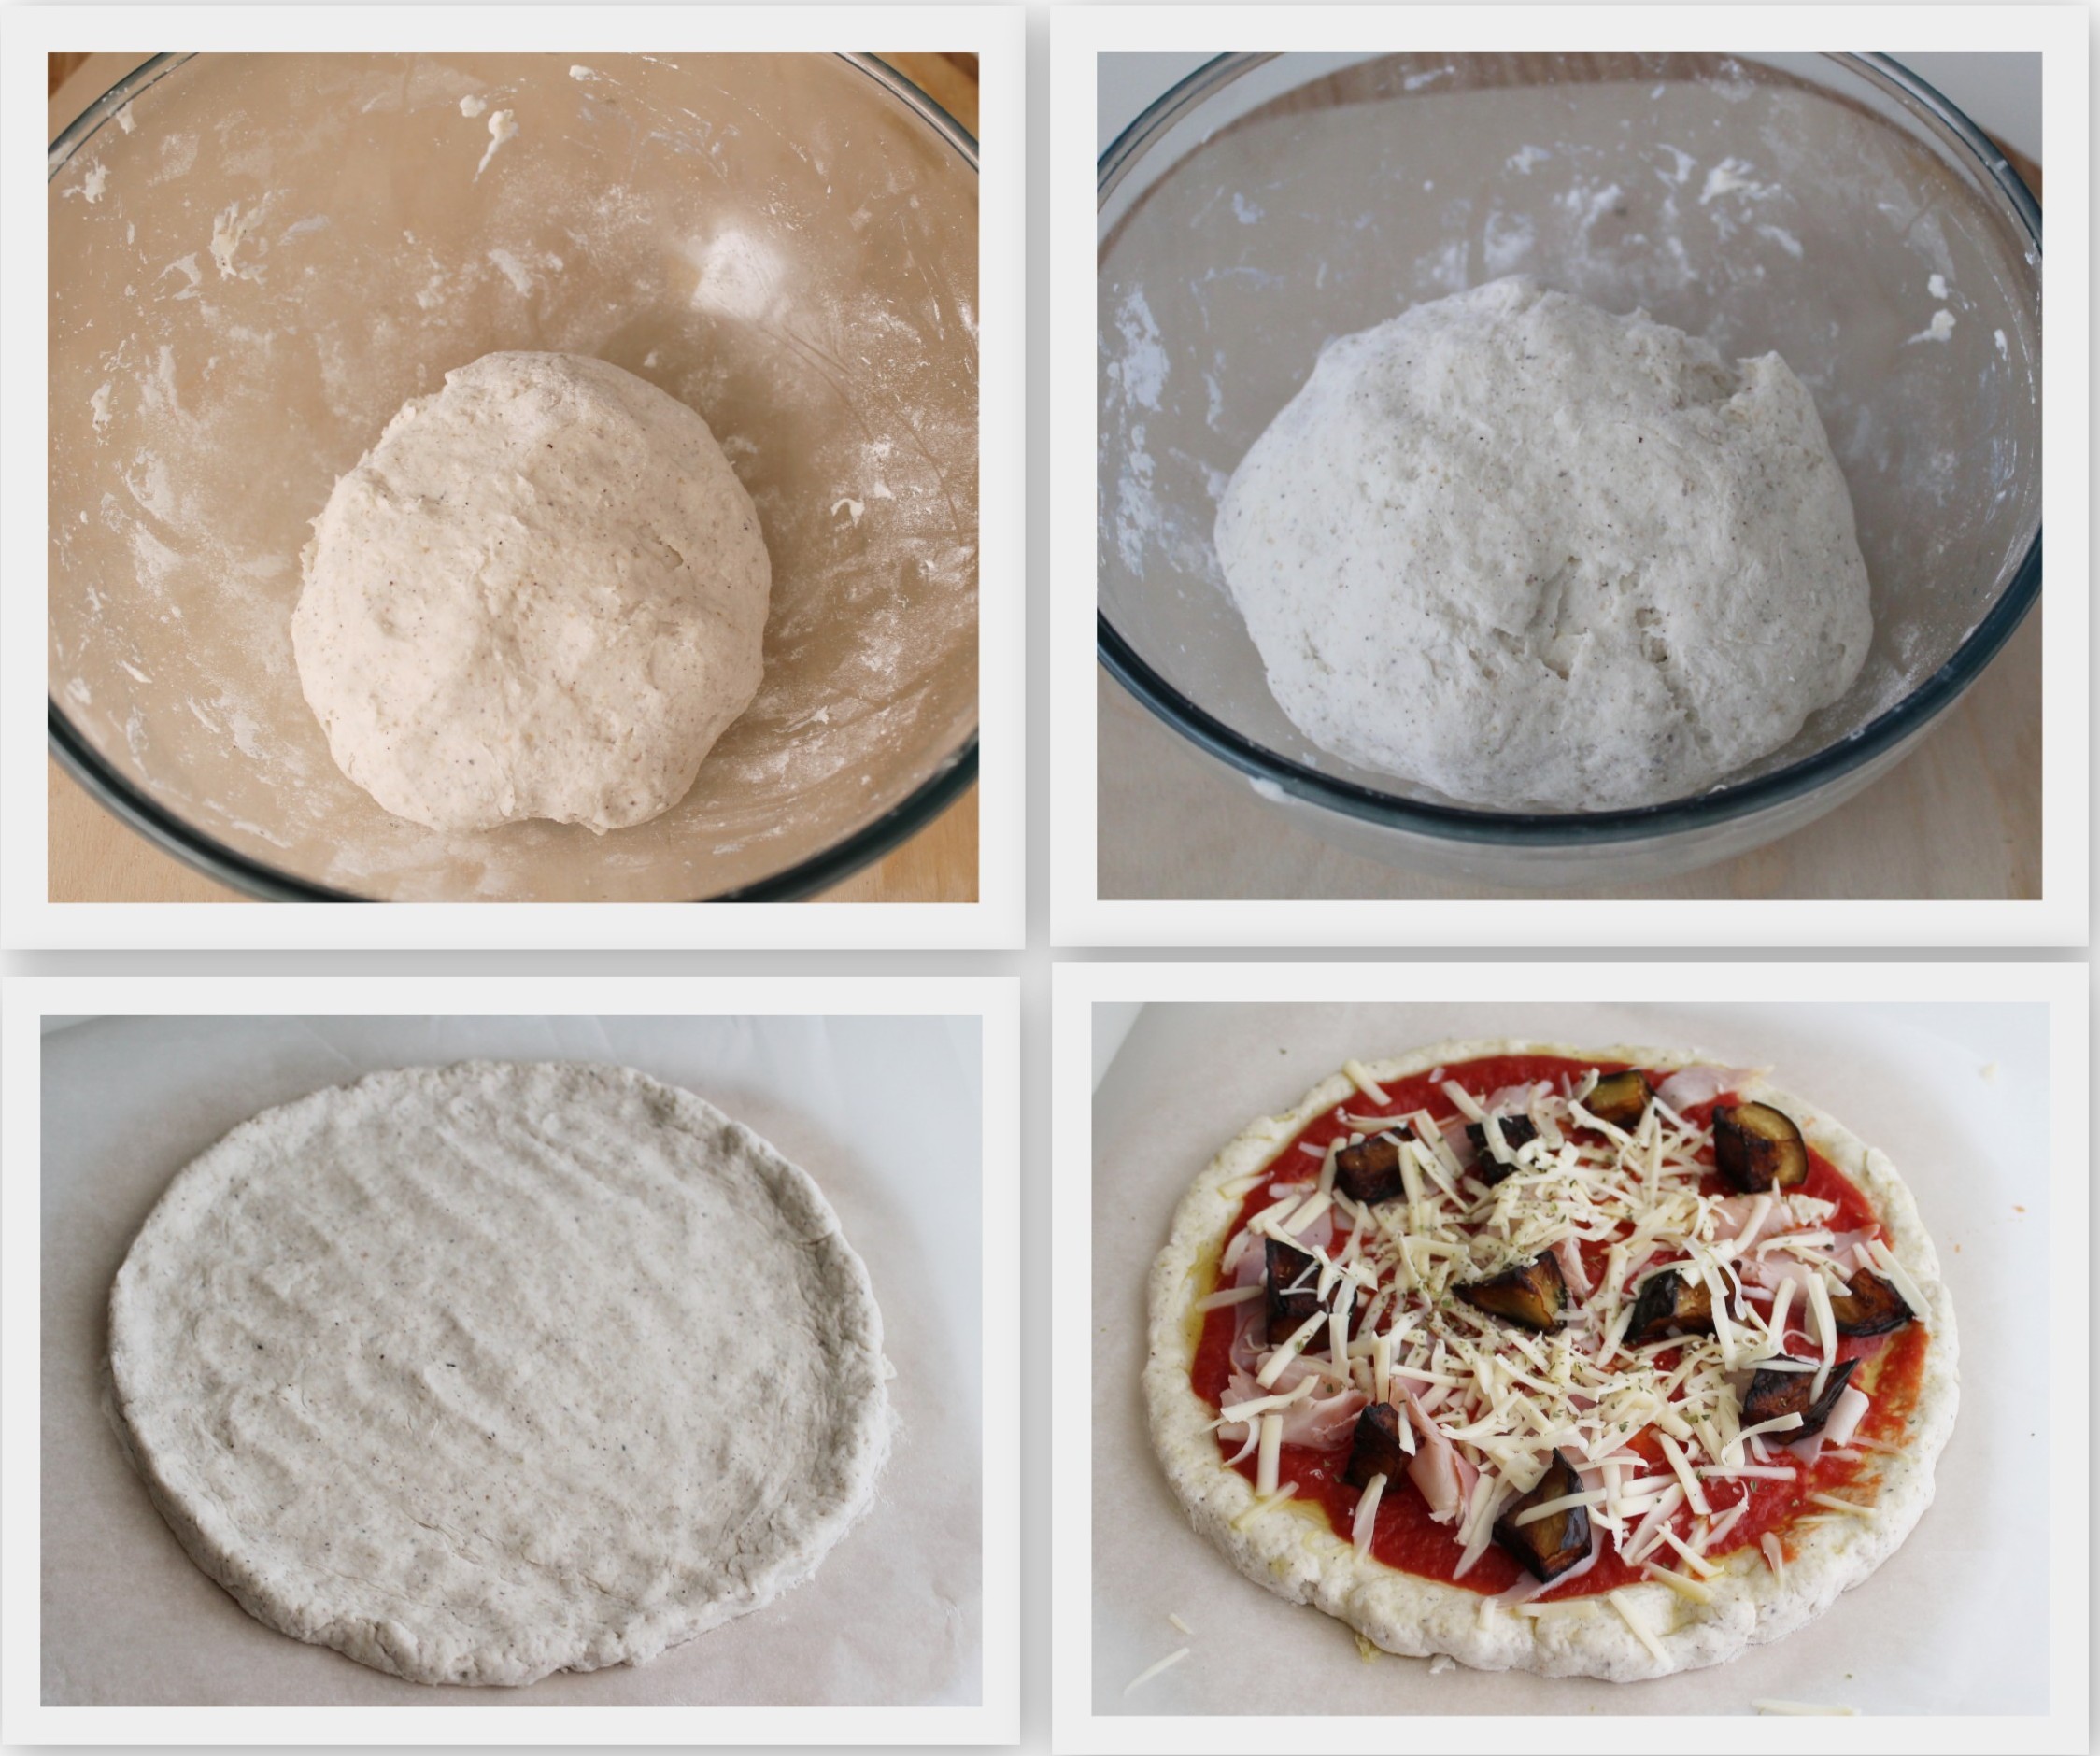 Pizza sans gluten et sans mix du commerce - La Cassata Celiaca